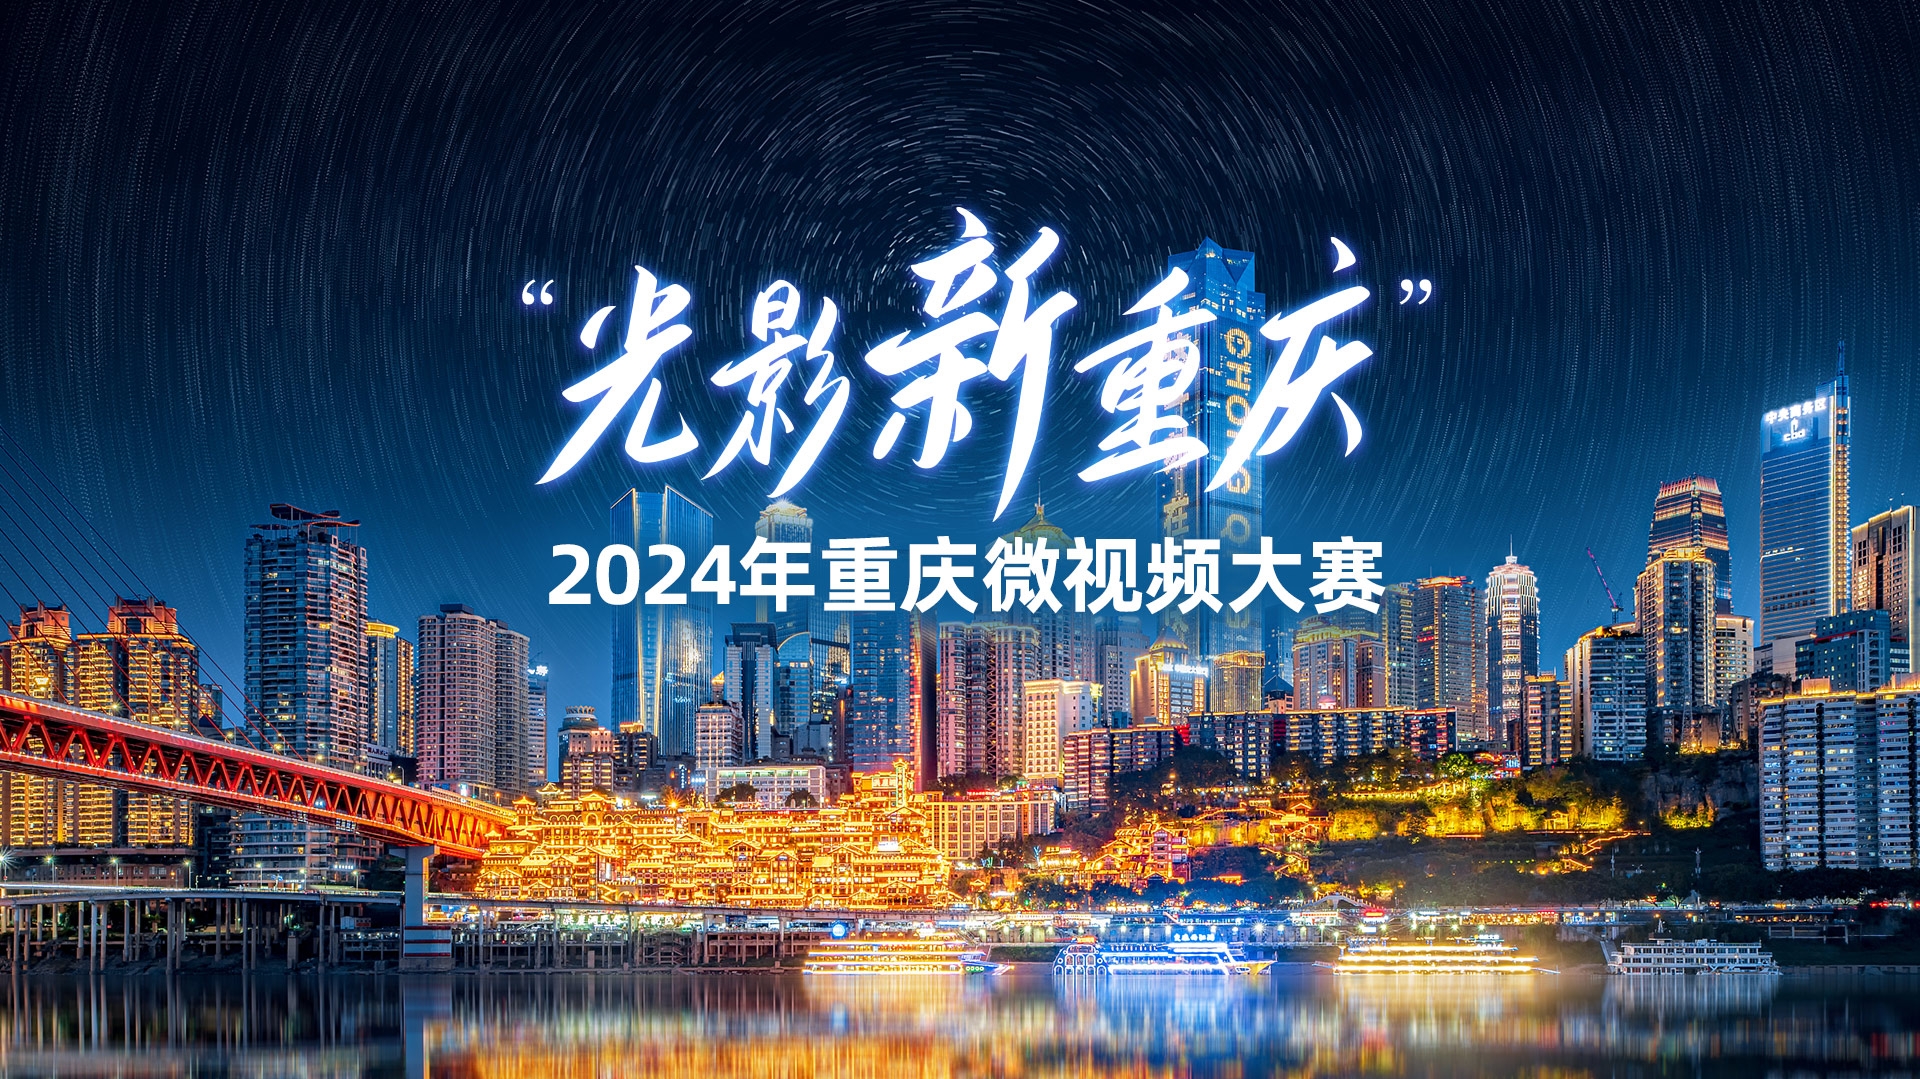 “光影新重庆”2024年重庆微视频大赛正式启动